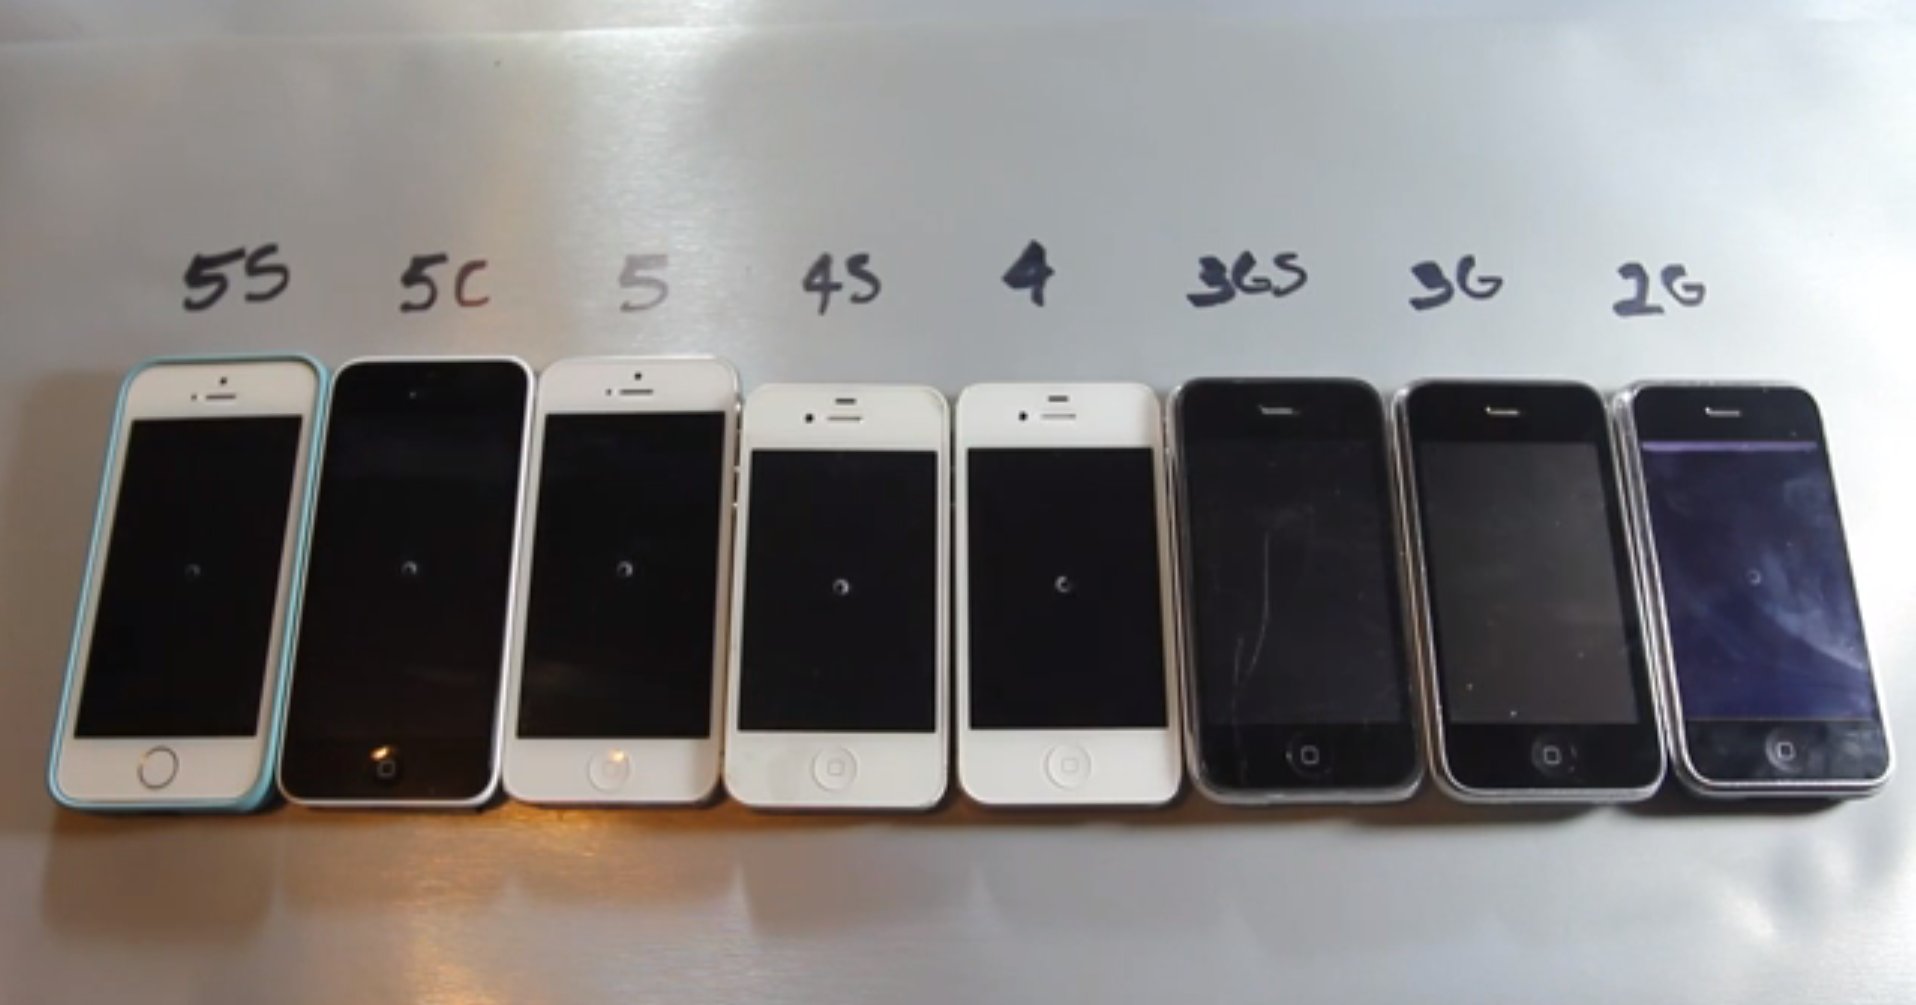 Geschwindigkeitsvergleich der iPhones mit Video